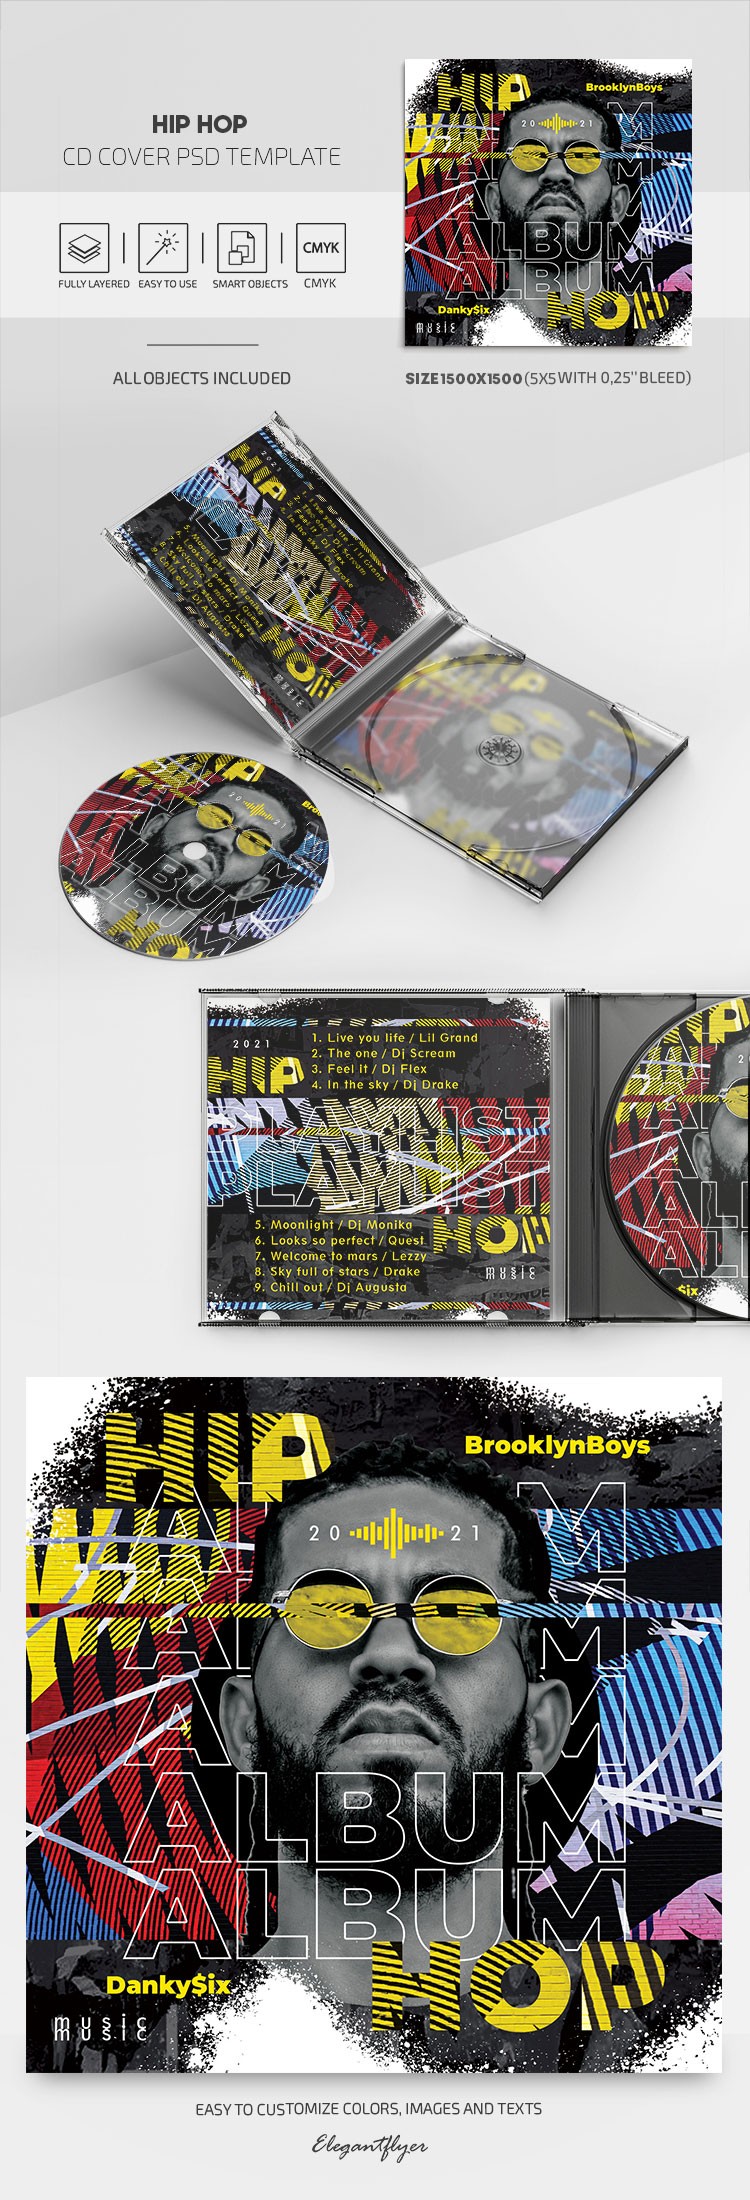 嘻哈CD封面 by ElegantFlyer